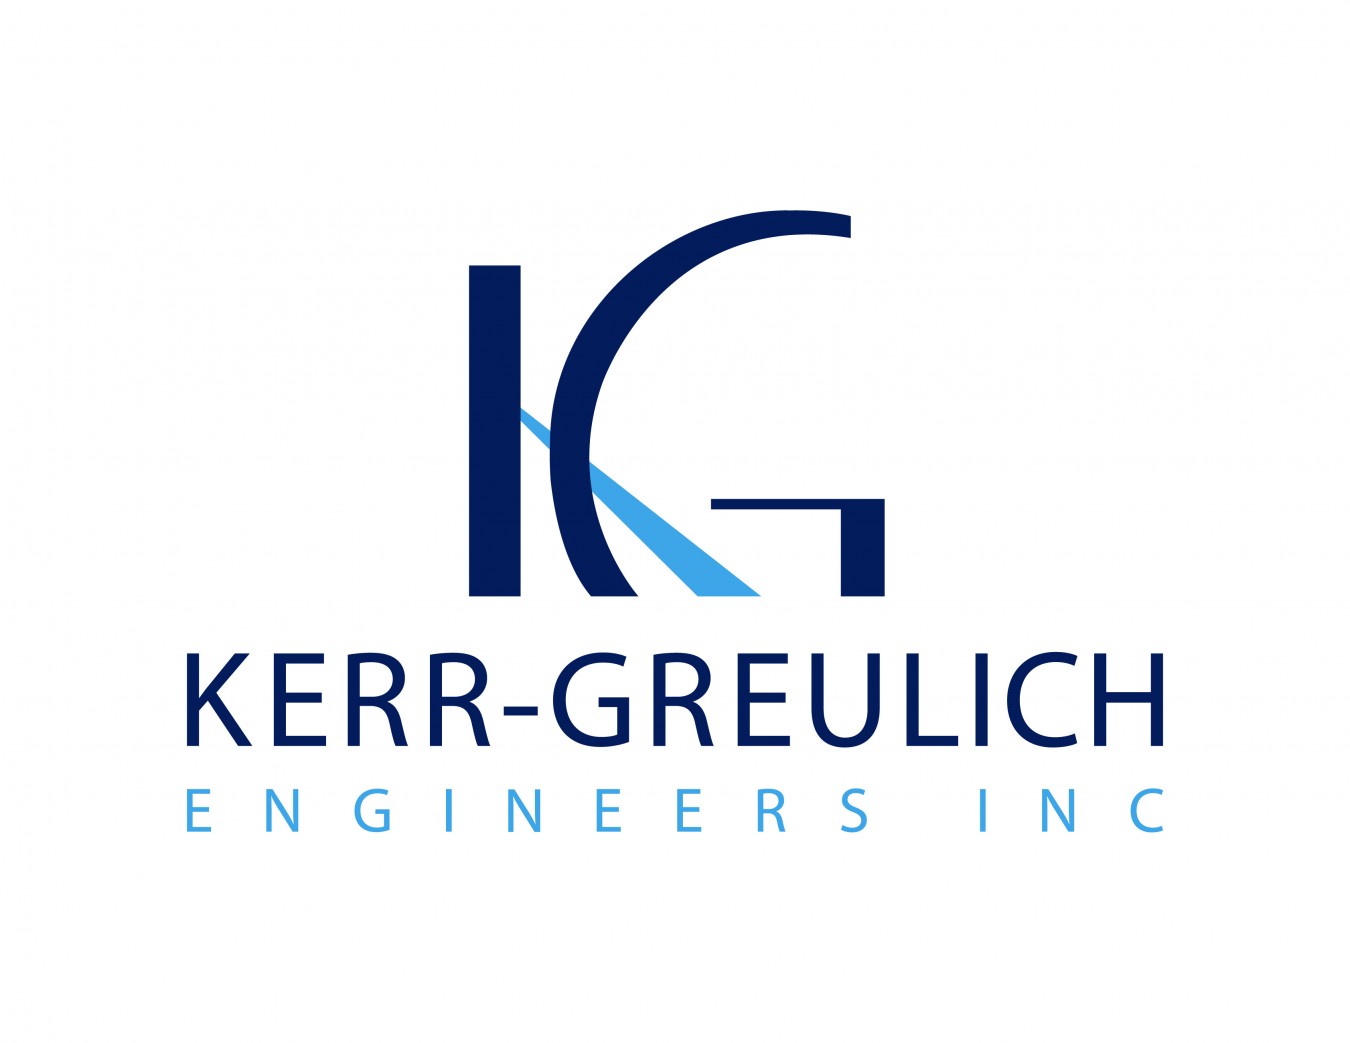 Kerr-Greulich Engineers, Inc.